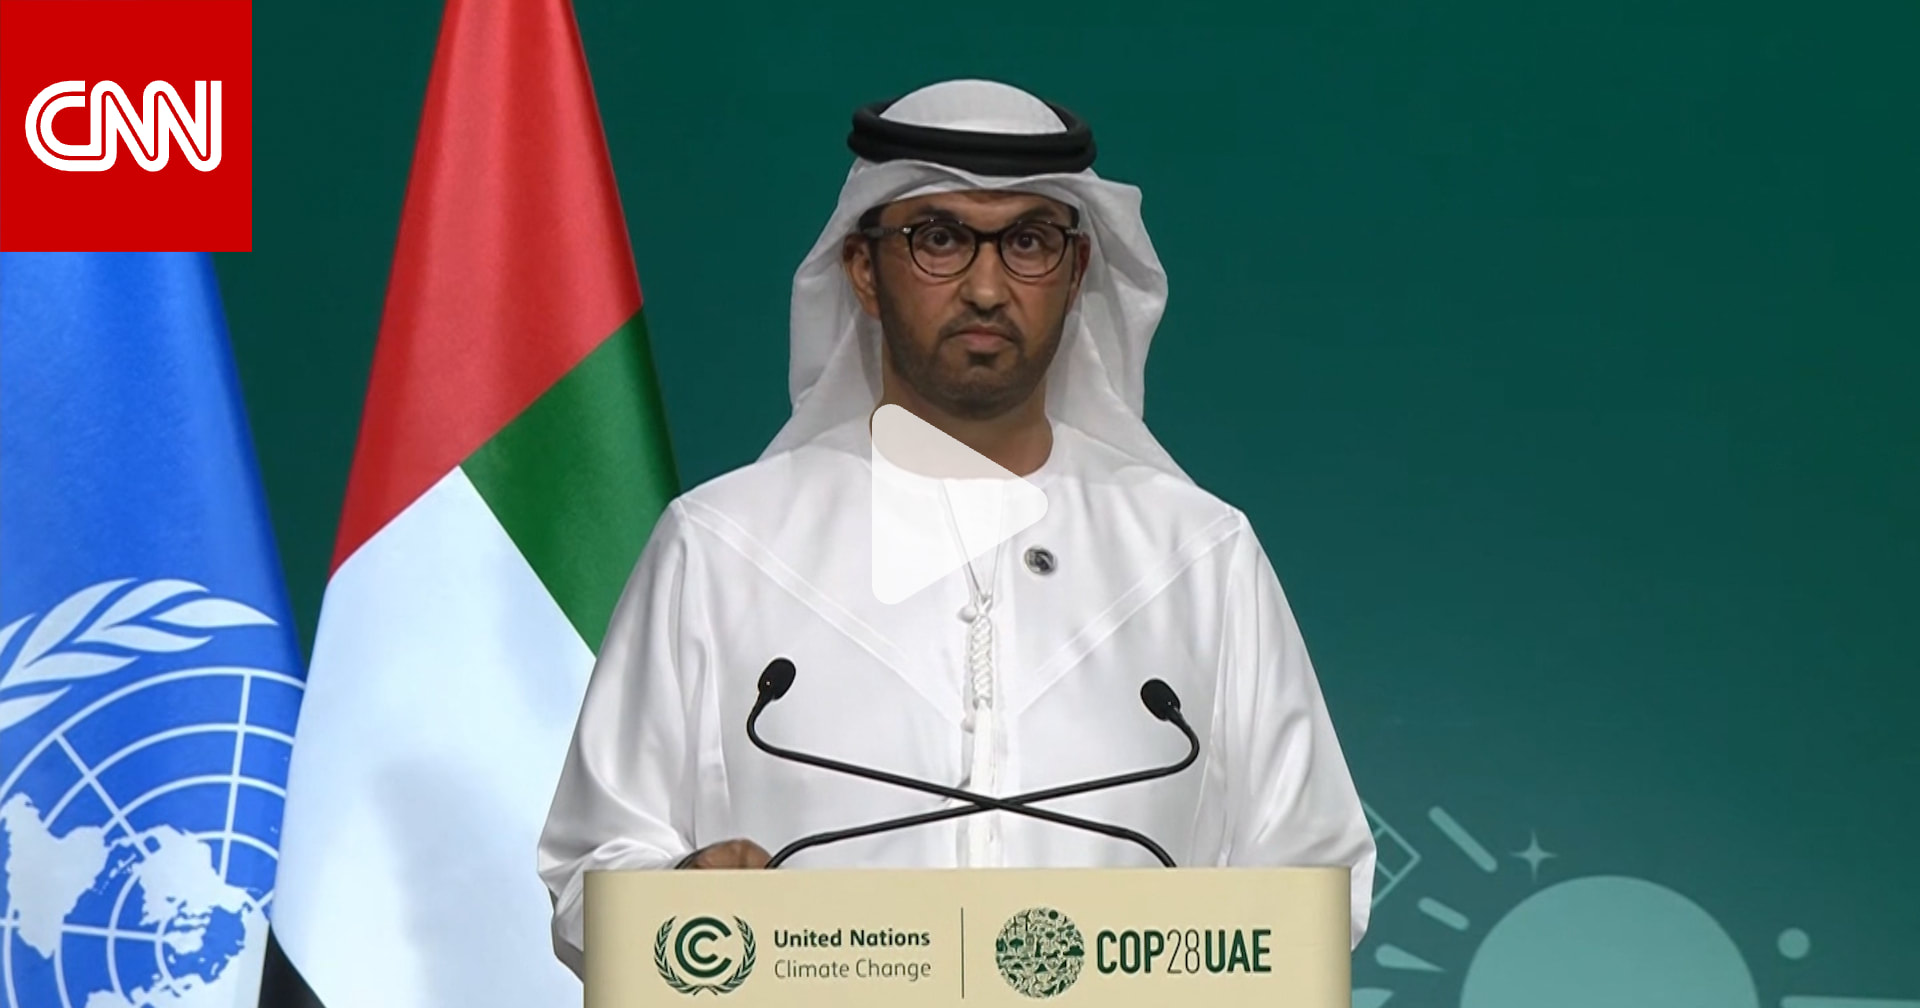 سلطان الجابر: اتخذنا خيارًا جريئًا للتعامل مع شركات النفط والغاز